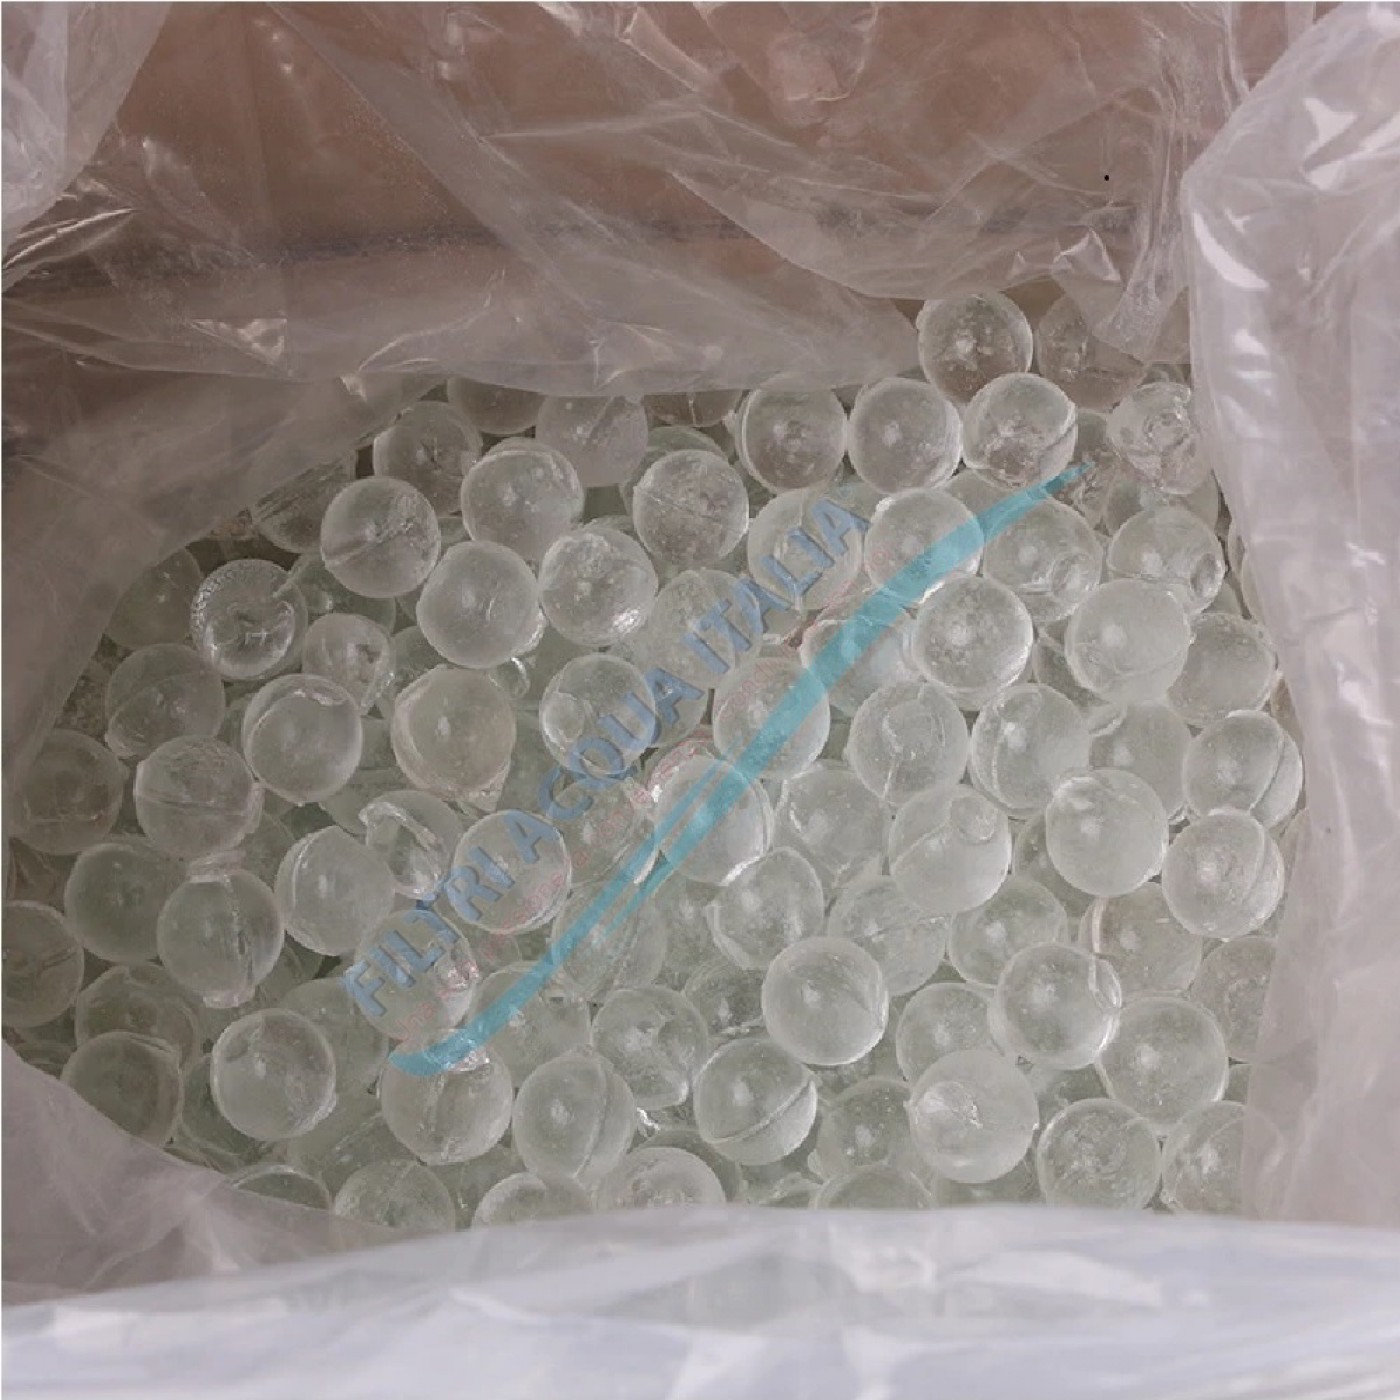 Ricarica di polifosfato in polvere per dosatori - 1 kg